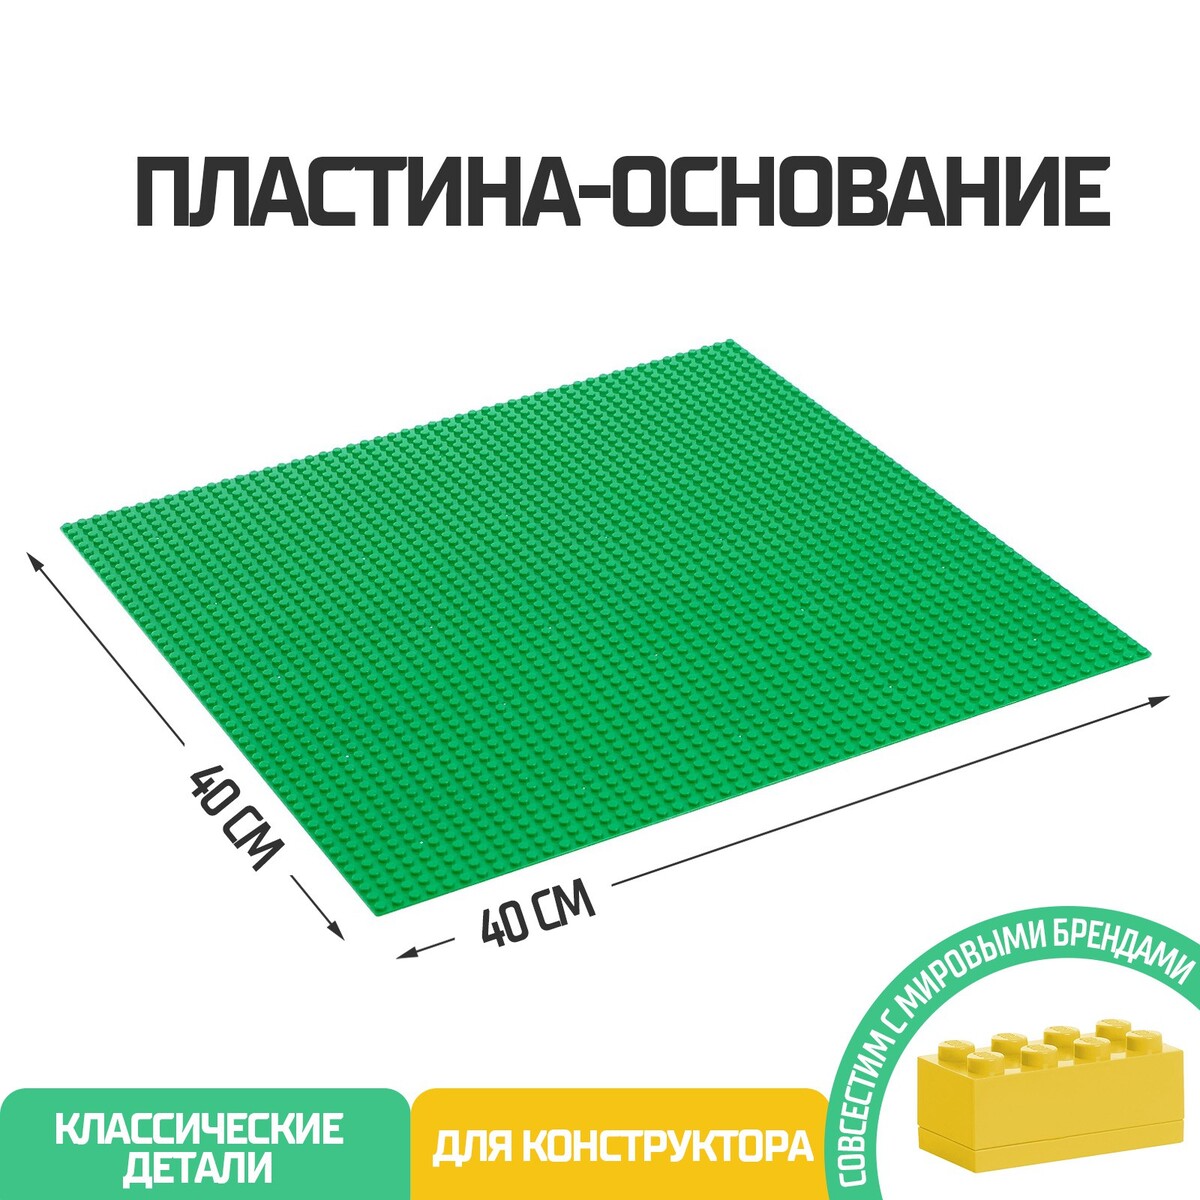 Пластина-основание для конструктора, 40 х 40 см, цвет зеленый пластина основание для конструктора 25 5 × 25 5 см салатовый